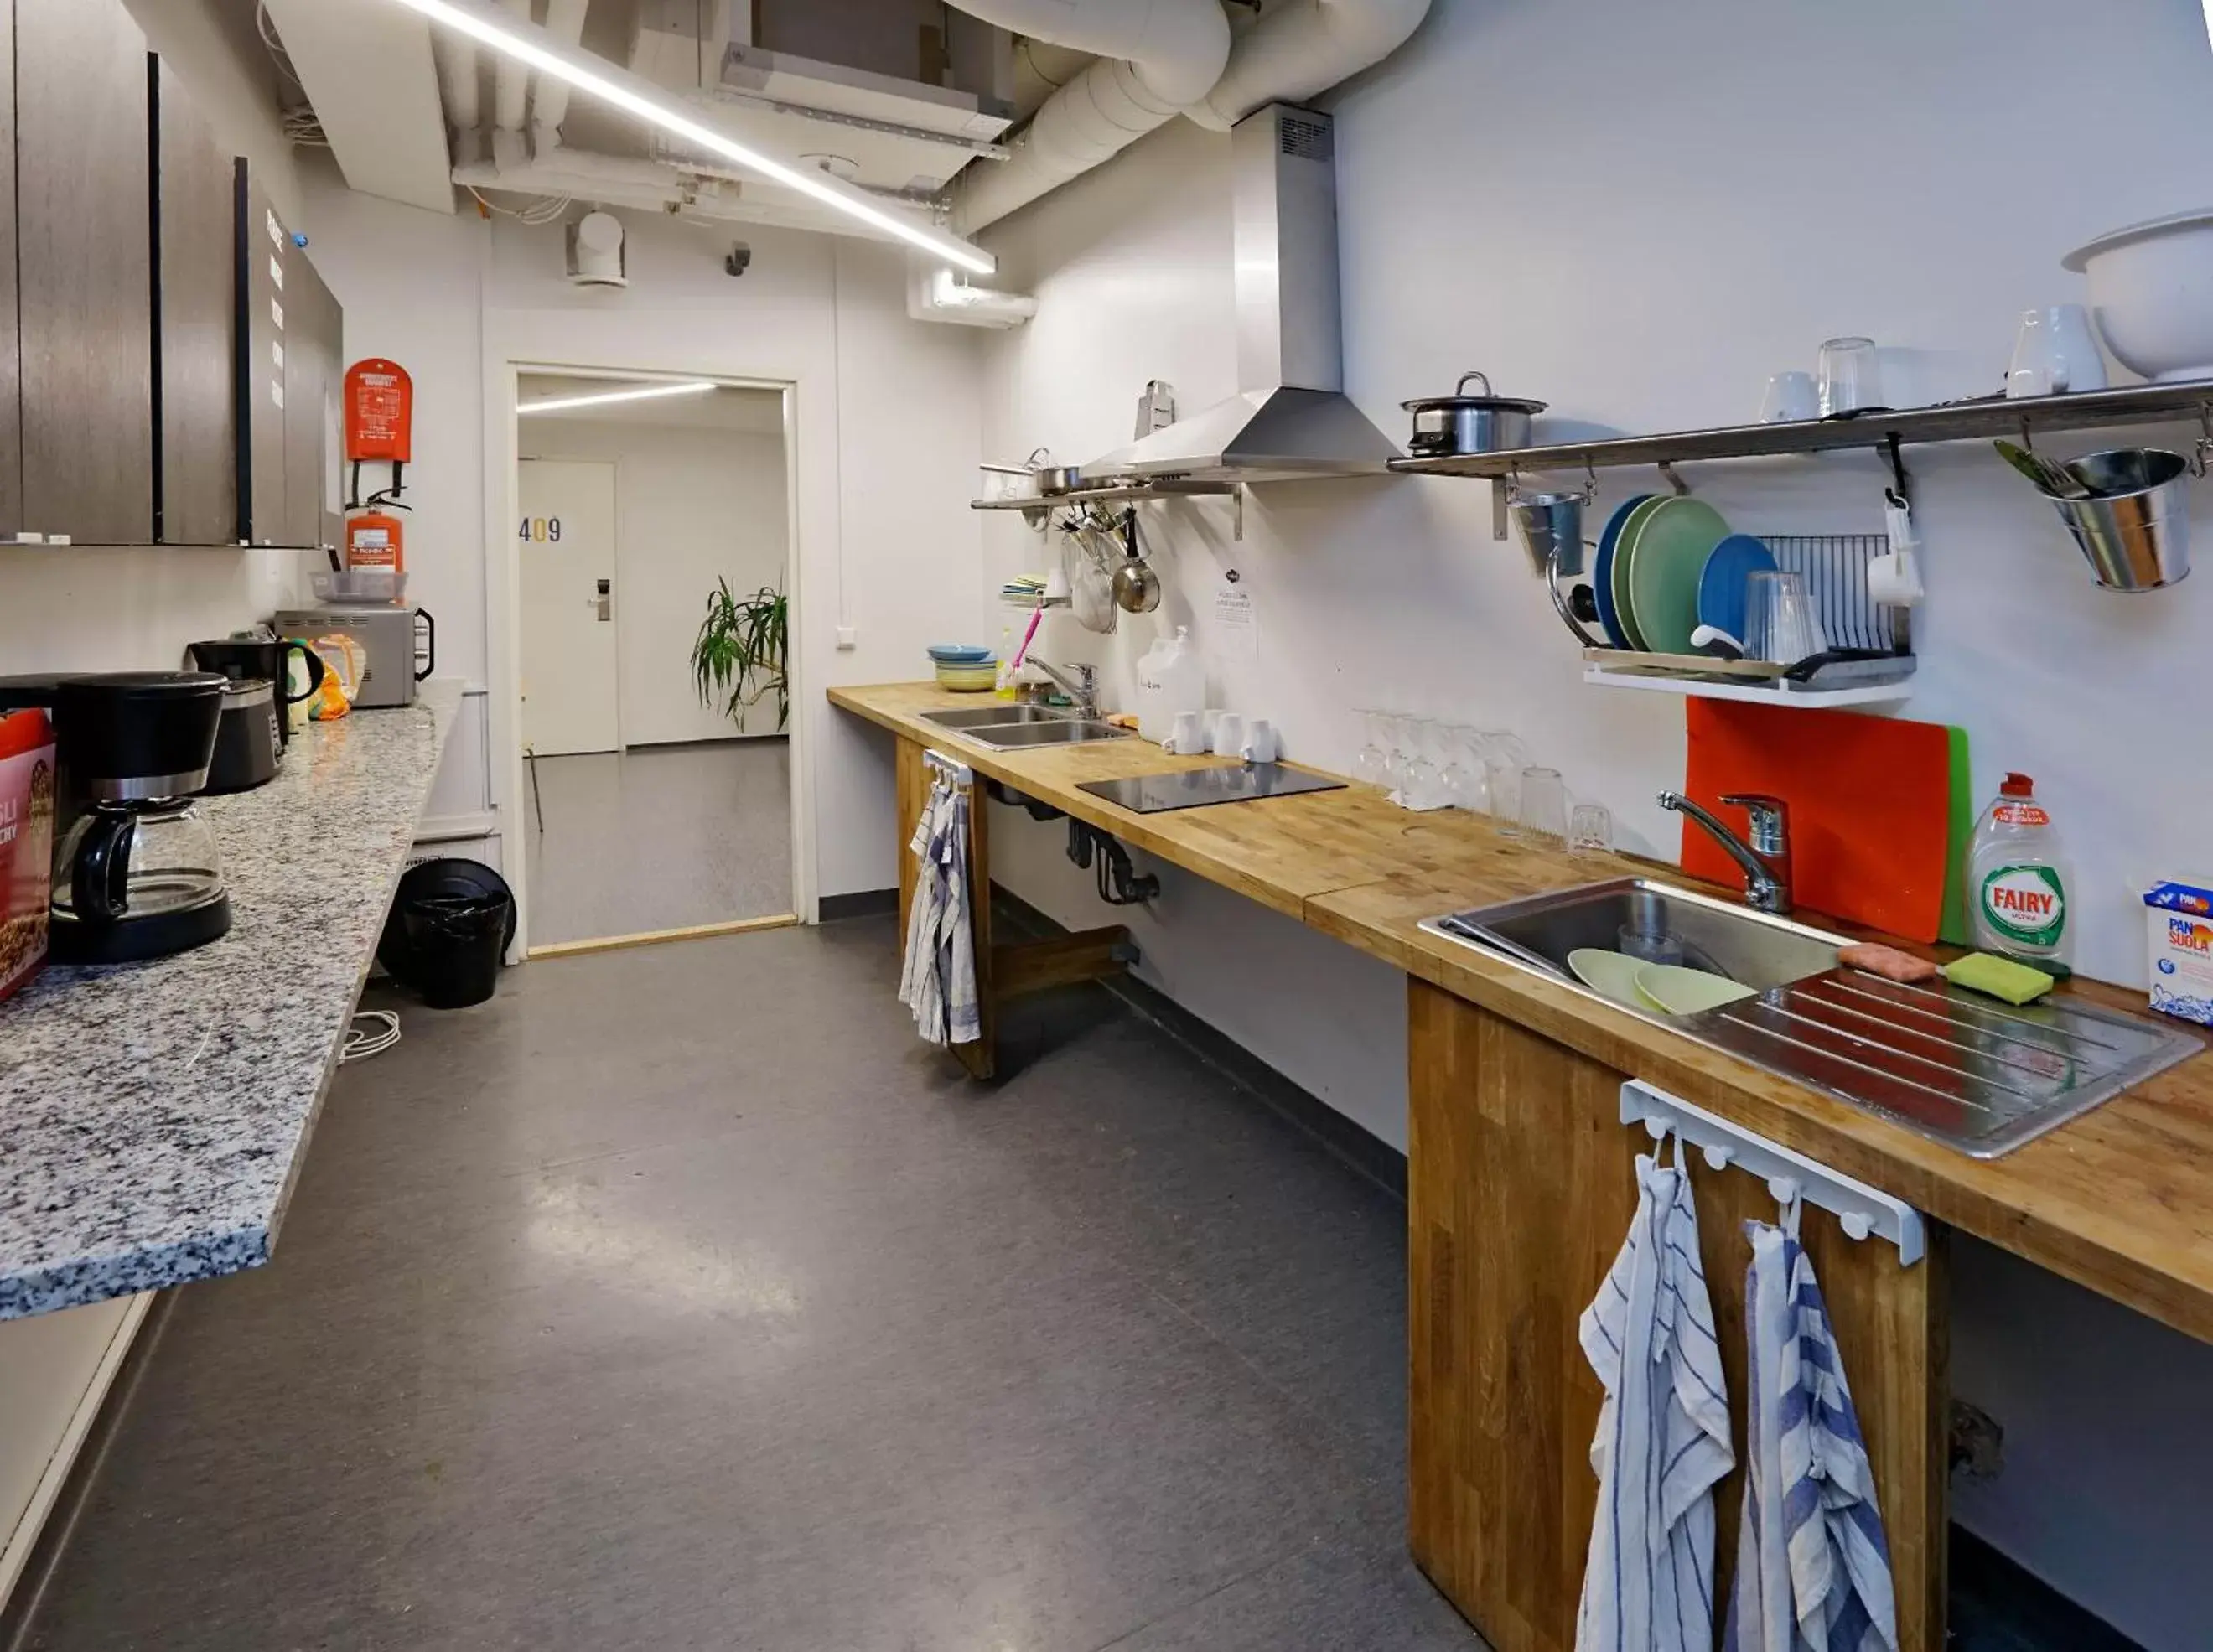 Kitchen or kitchenette, Kitchen/Kitchenette in CheapSleep Hostel Helsinki